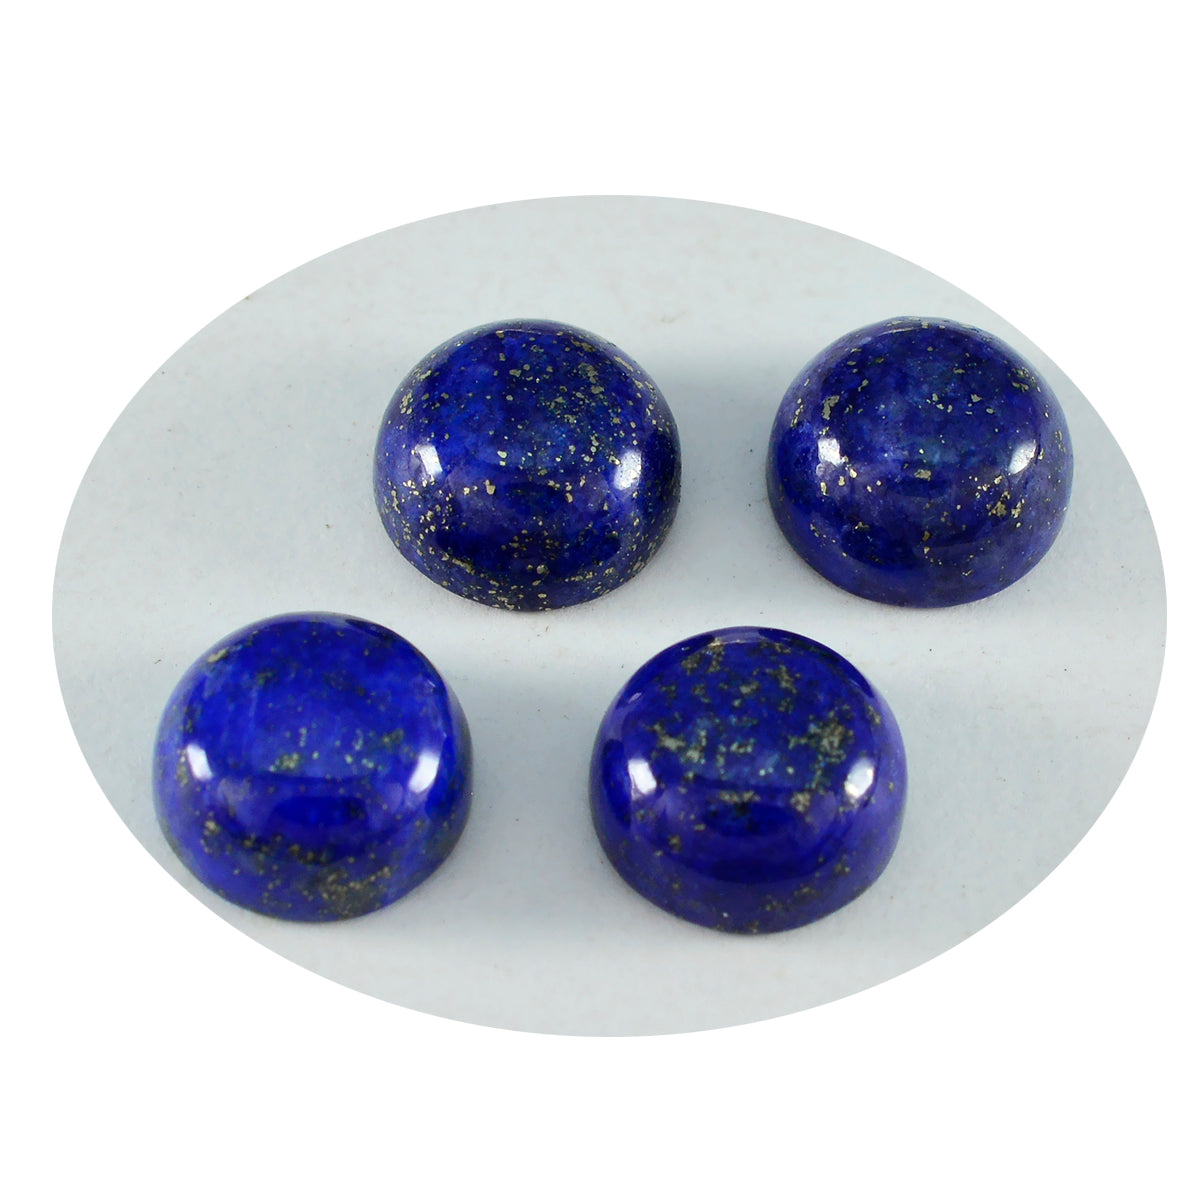 Riyogems 1 Stück blauer Lapislazuli-Cabochon, 8 x 8 mm, runde Form, hübscher, hochwertiger, loser Edelstein